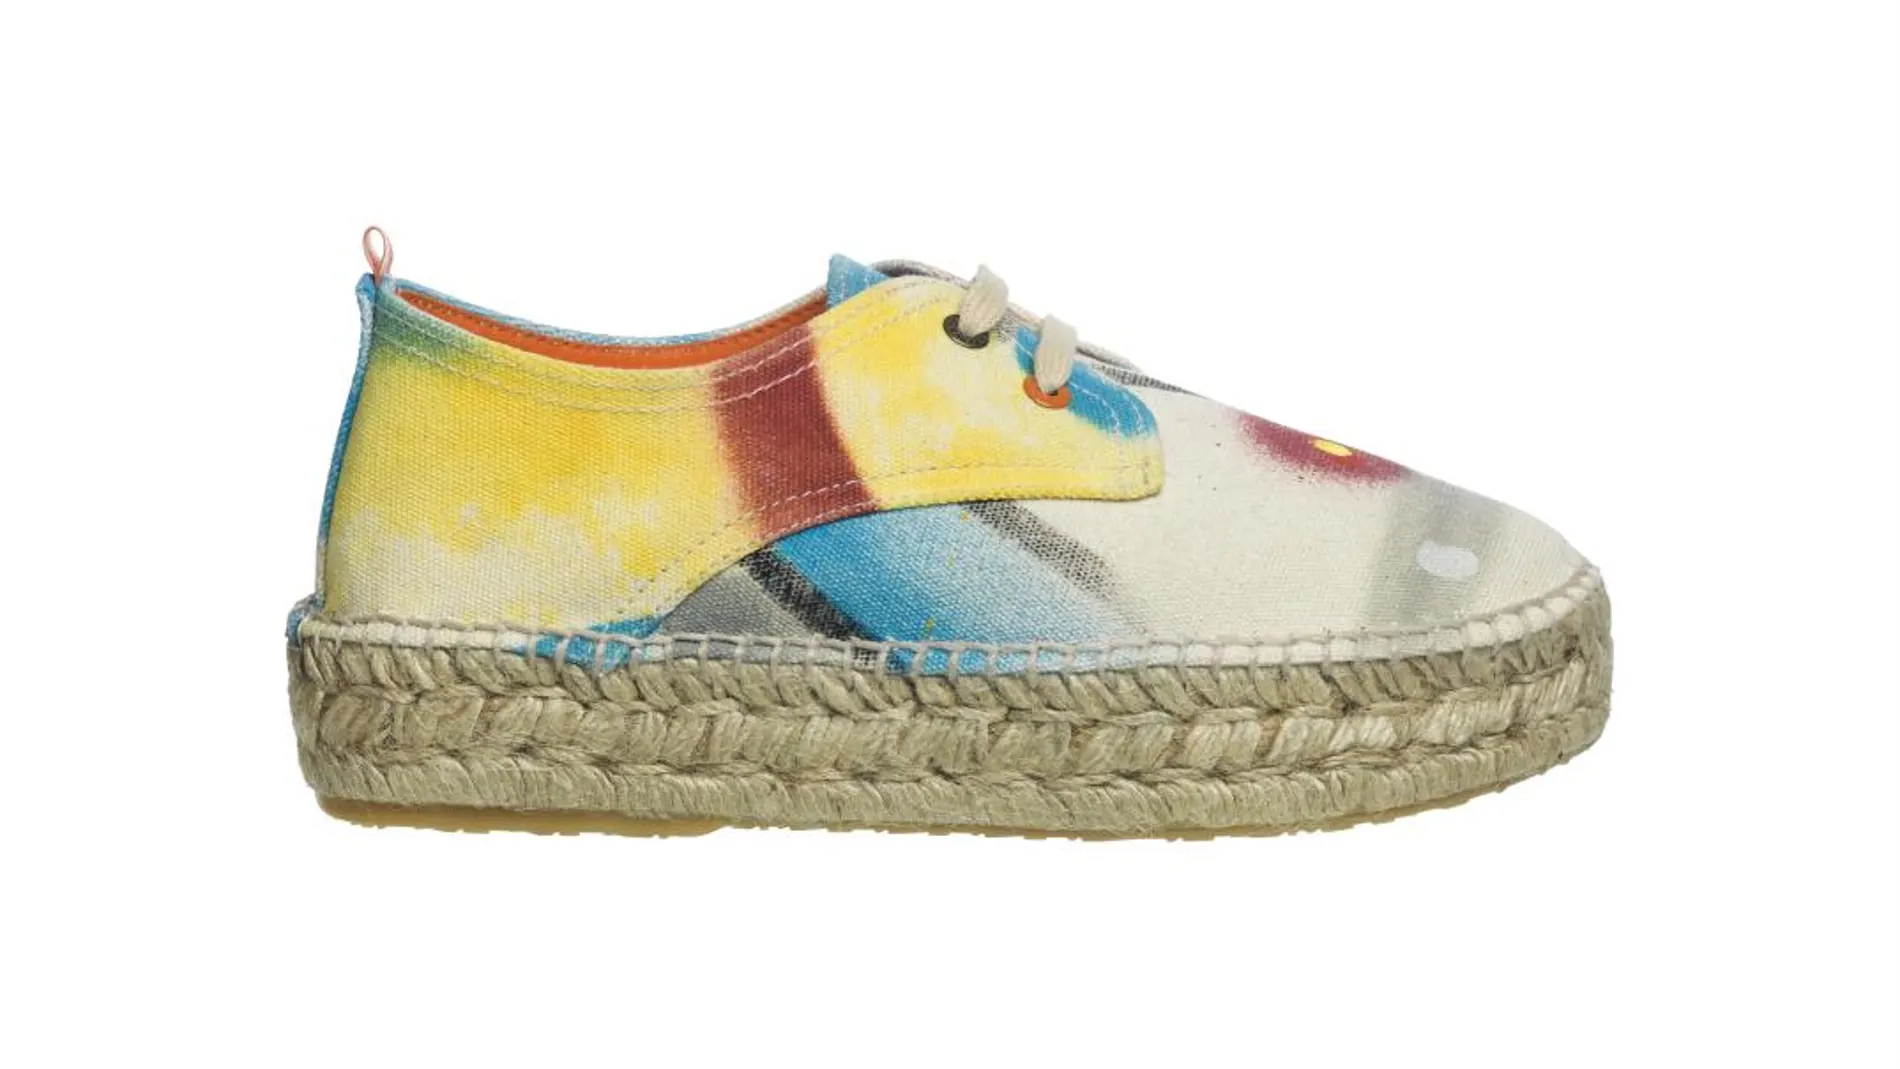 ‘Cápsula’, la colección limitada de la marca ’Abarca shoes’ está considerado como arte de vanguardia